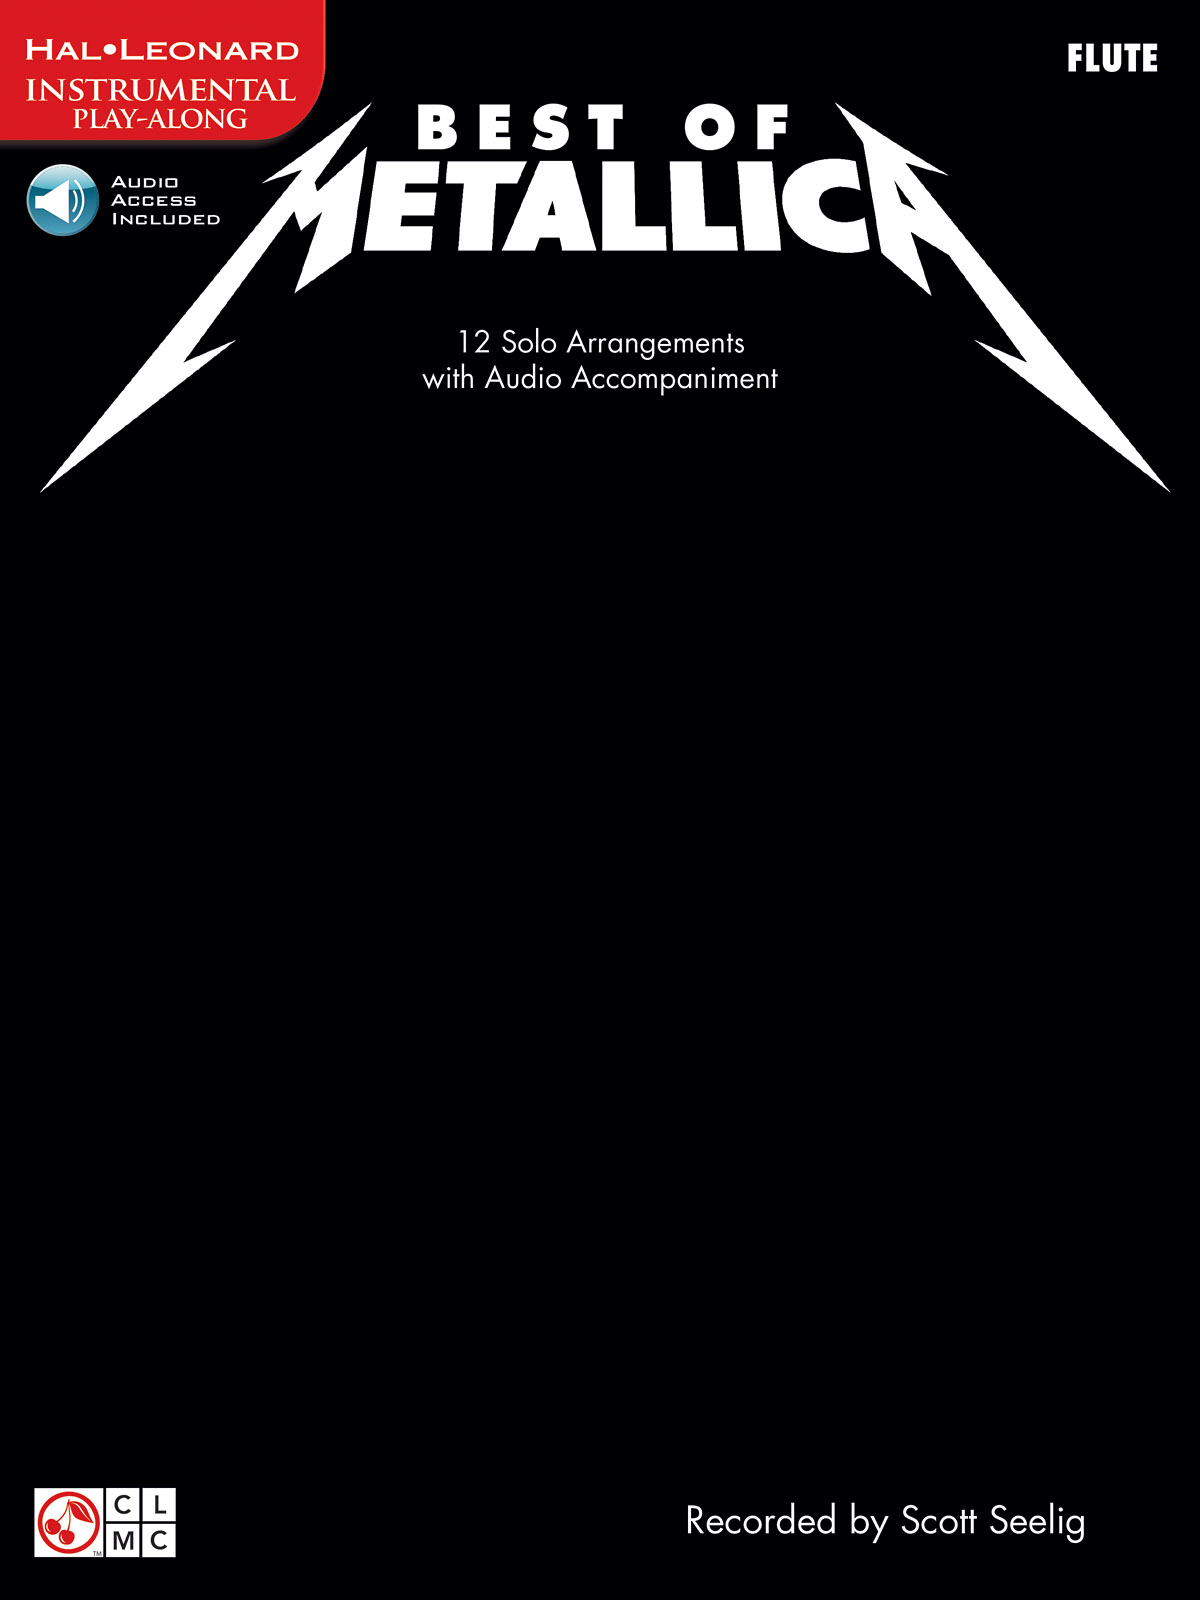 Best of Metallica – Flute